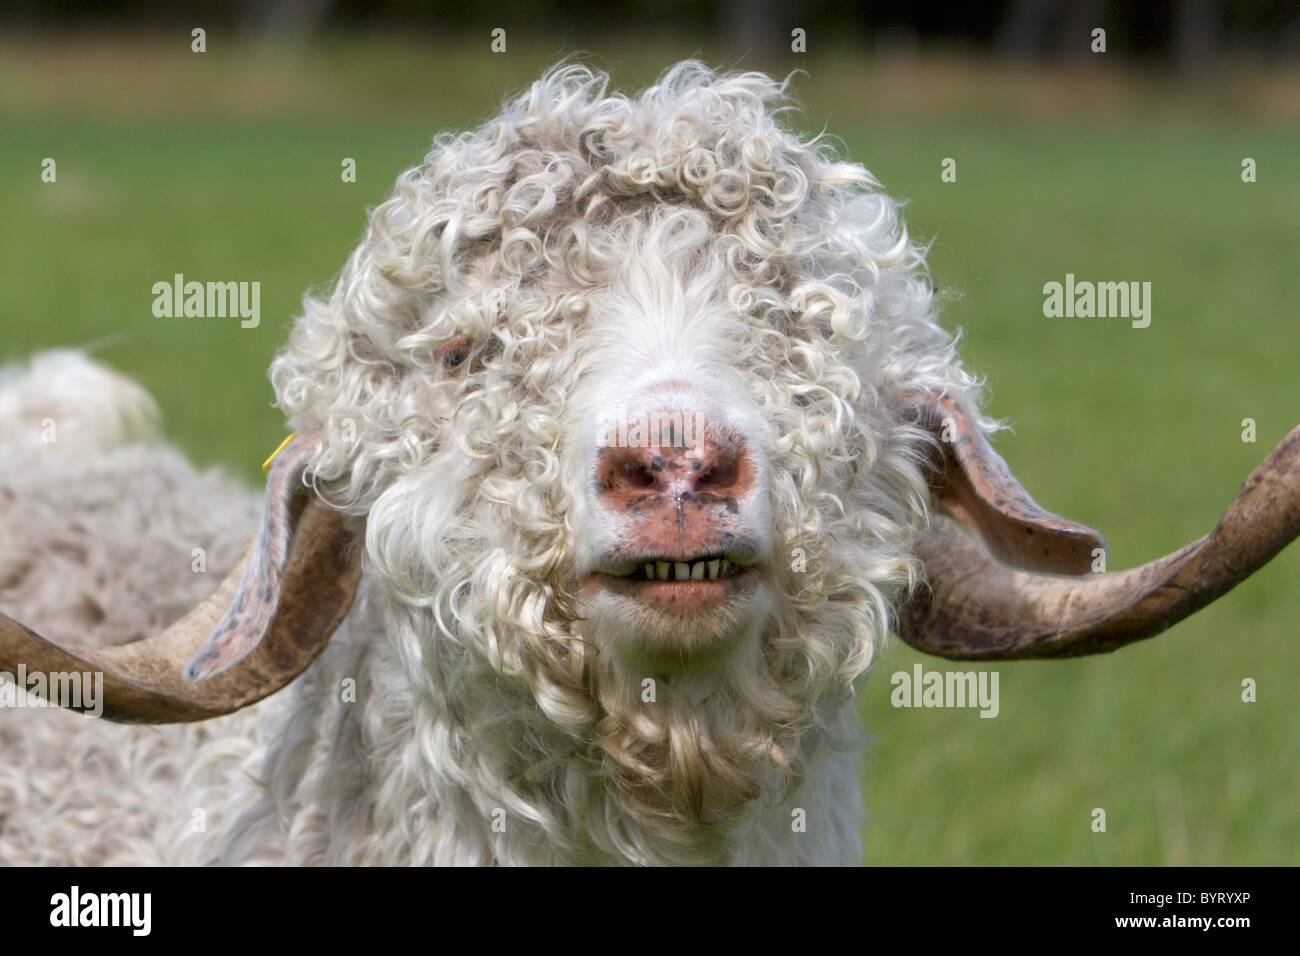 Ritratto di una capra mohair - Capra Angora Foto Stock